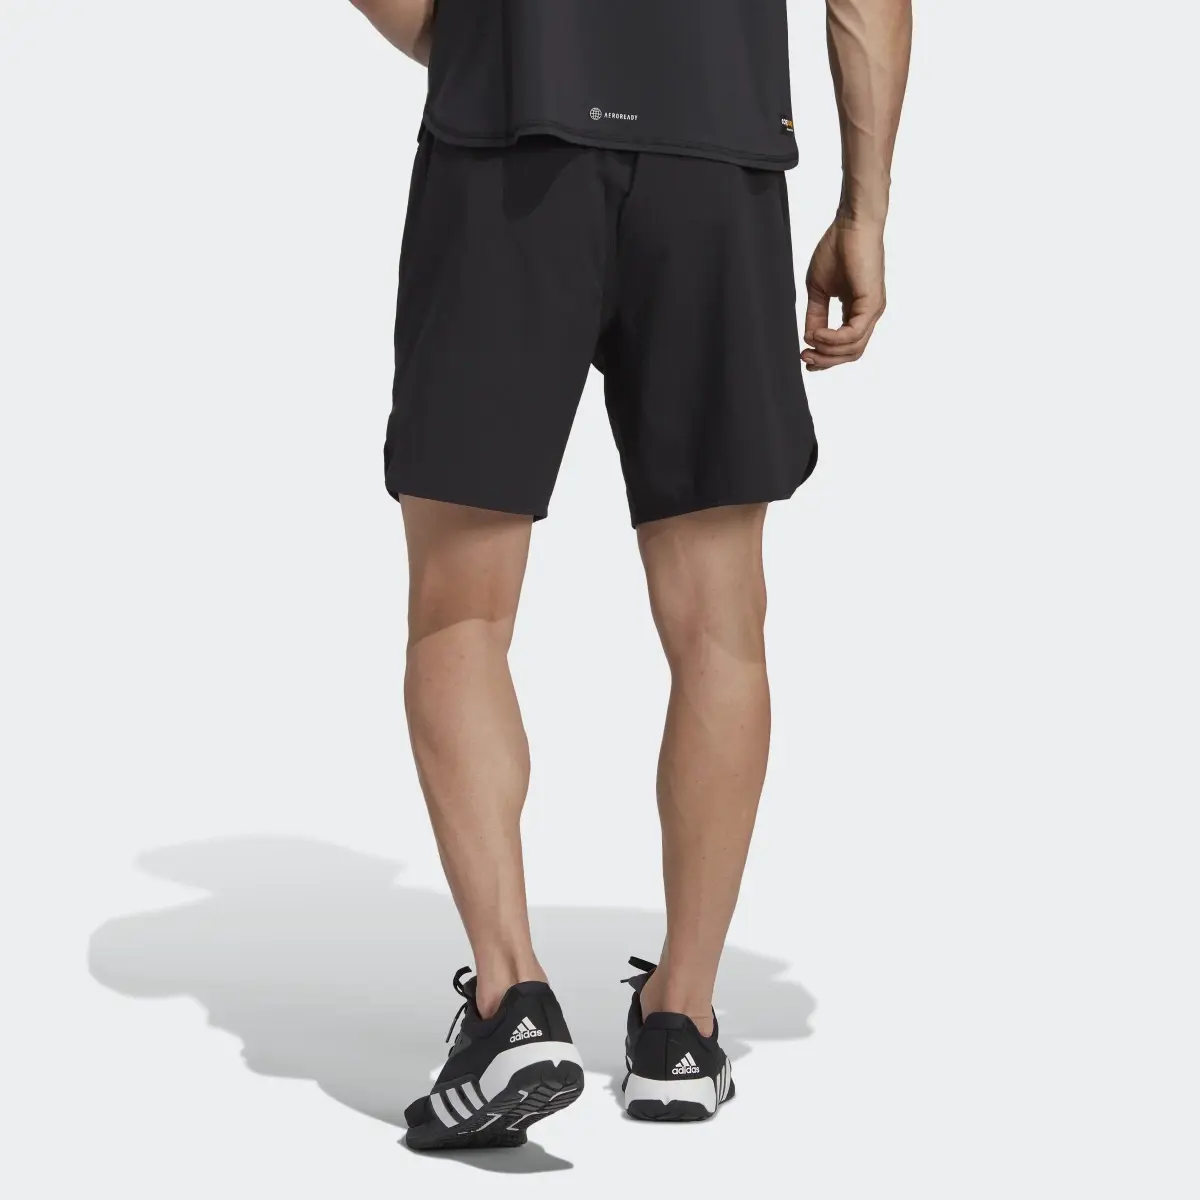 Adidas Designed for Training CORDURA® Workout Shorts. 2